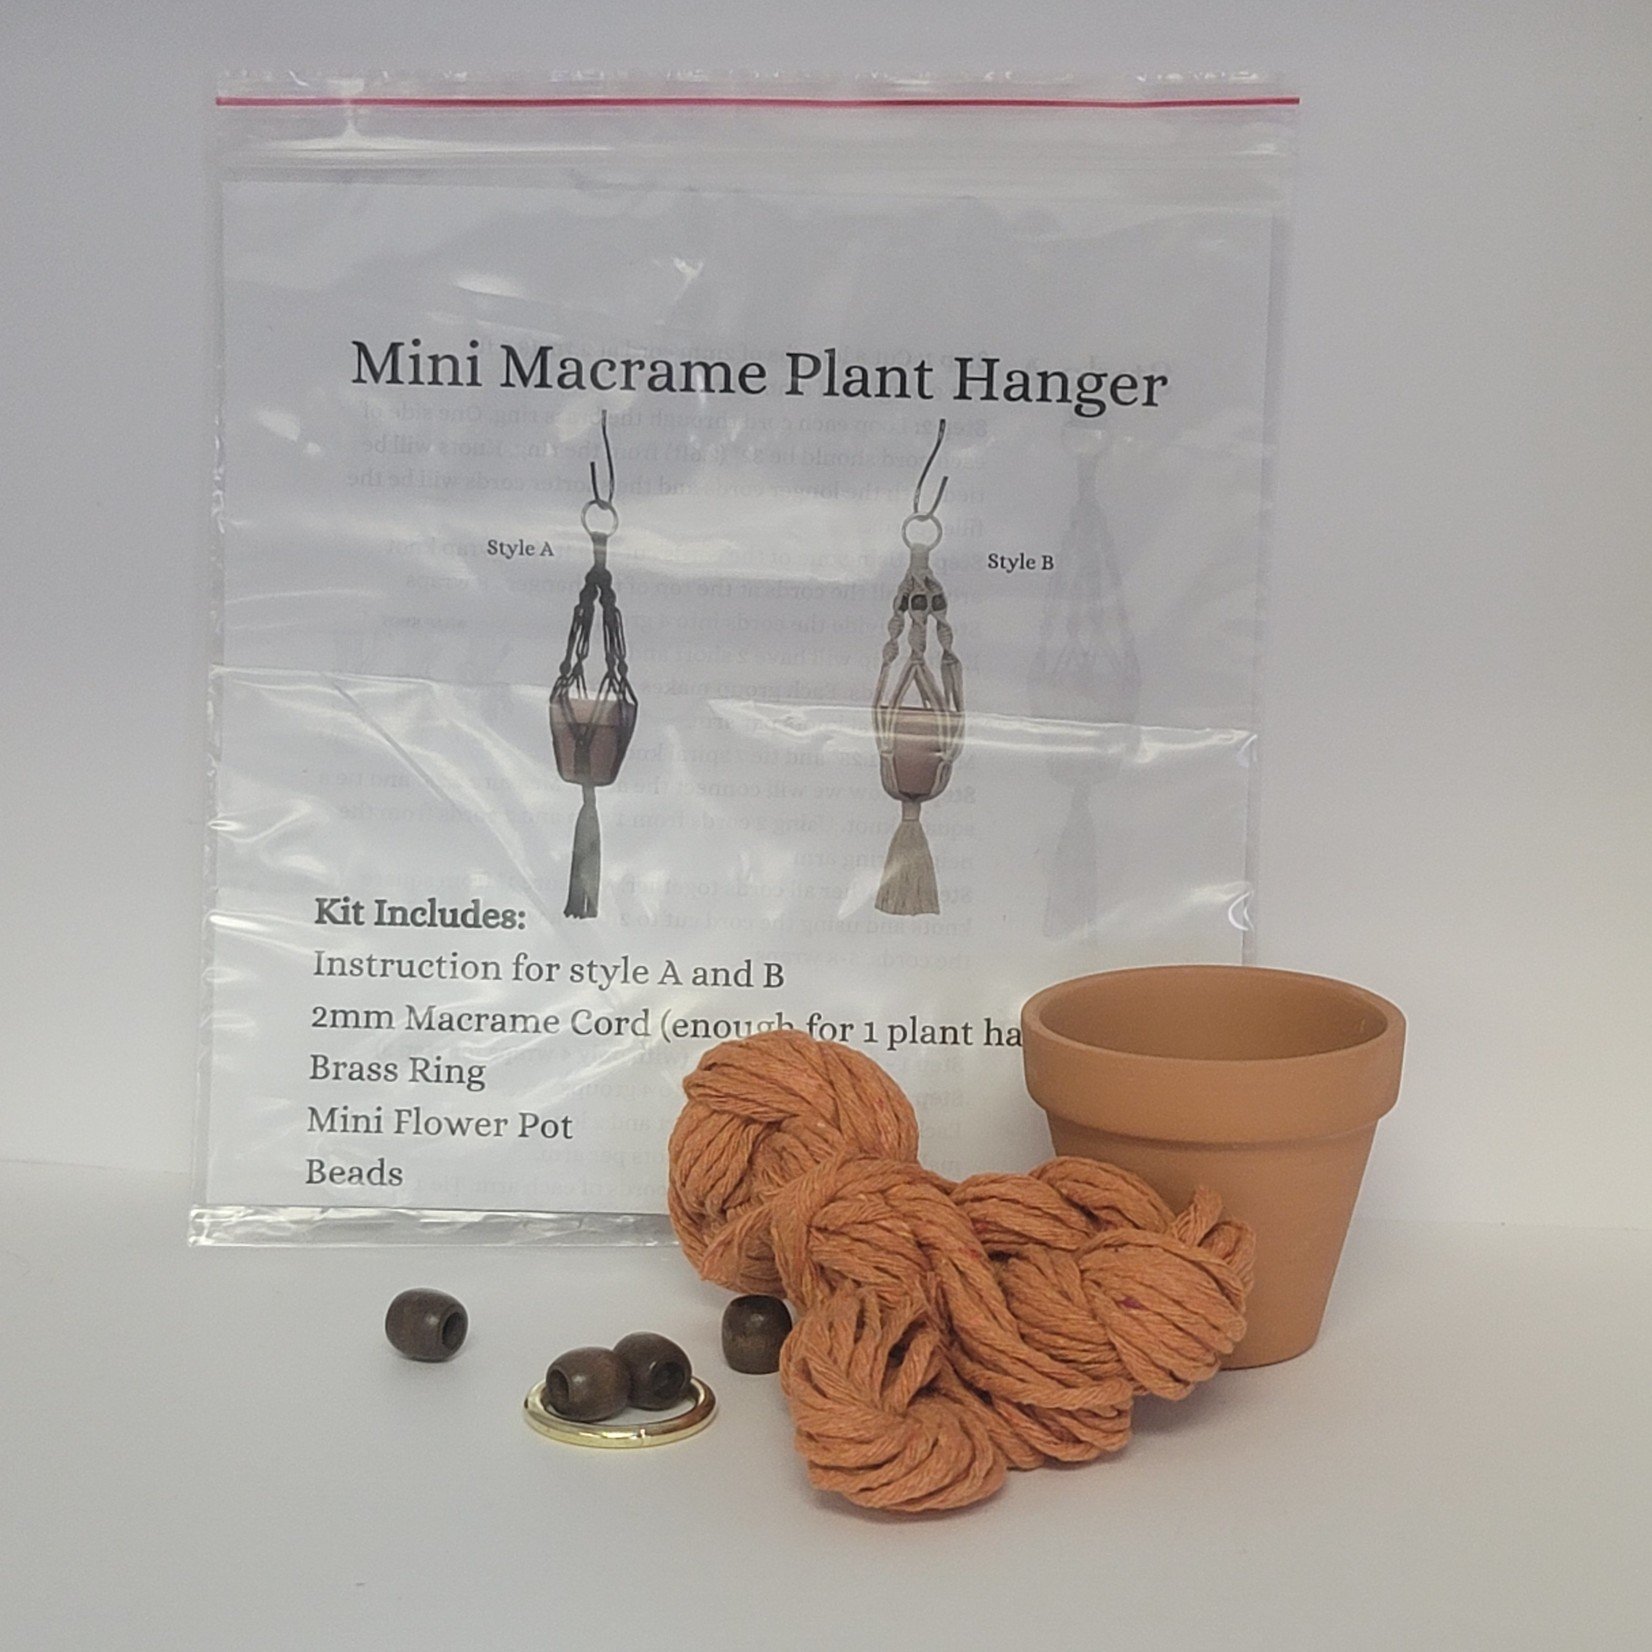 Mini Macrame Plant Hanger Kit